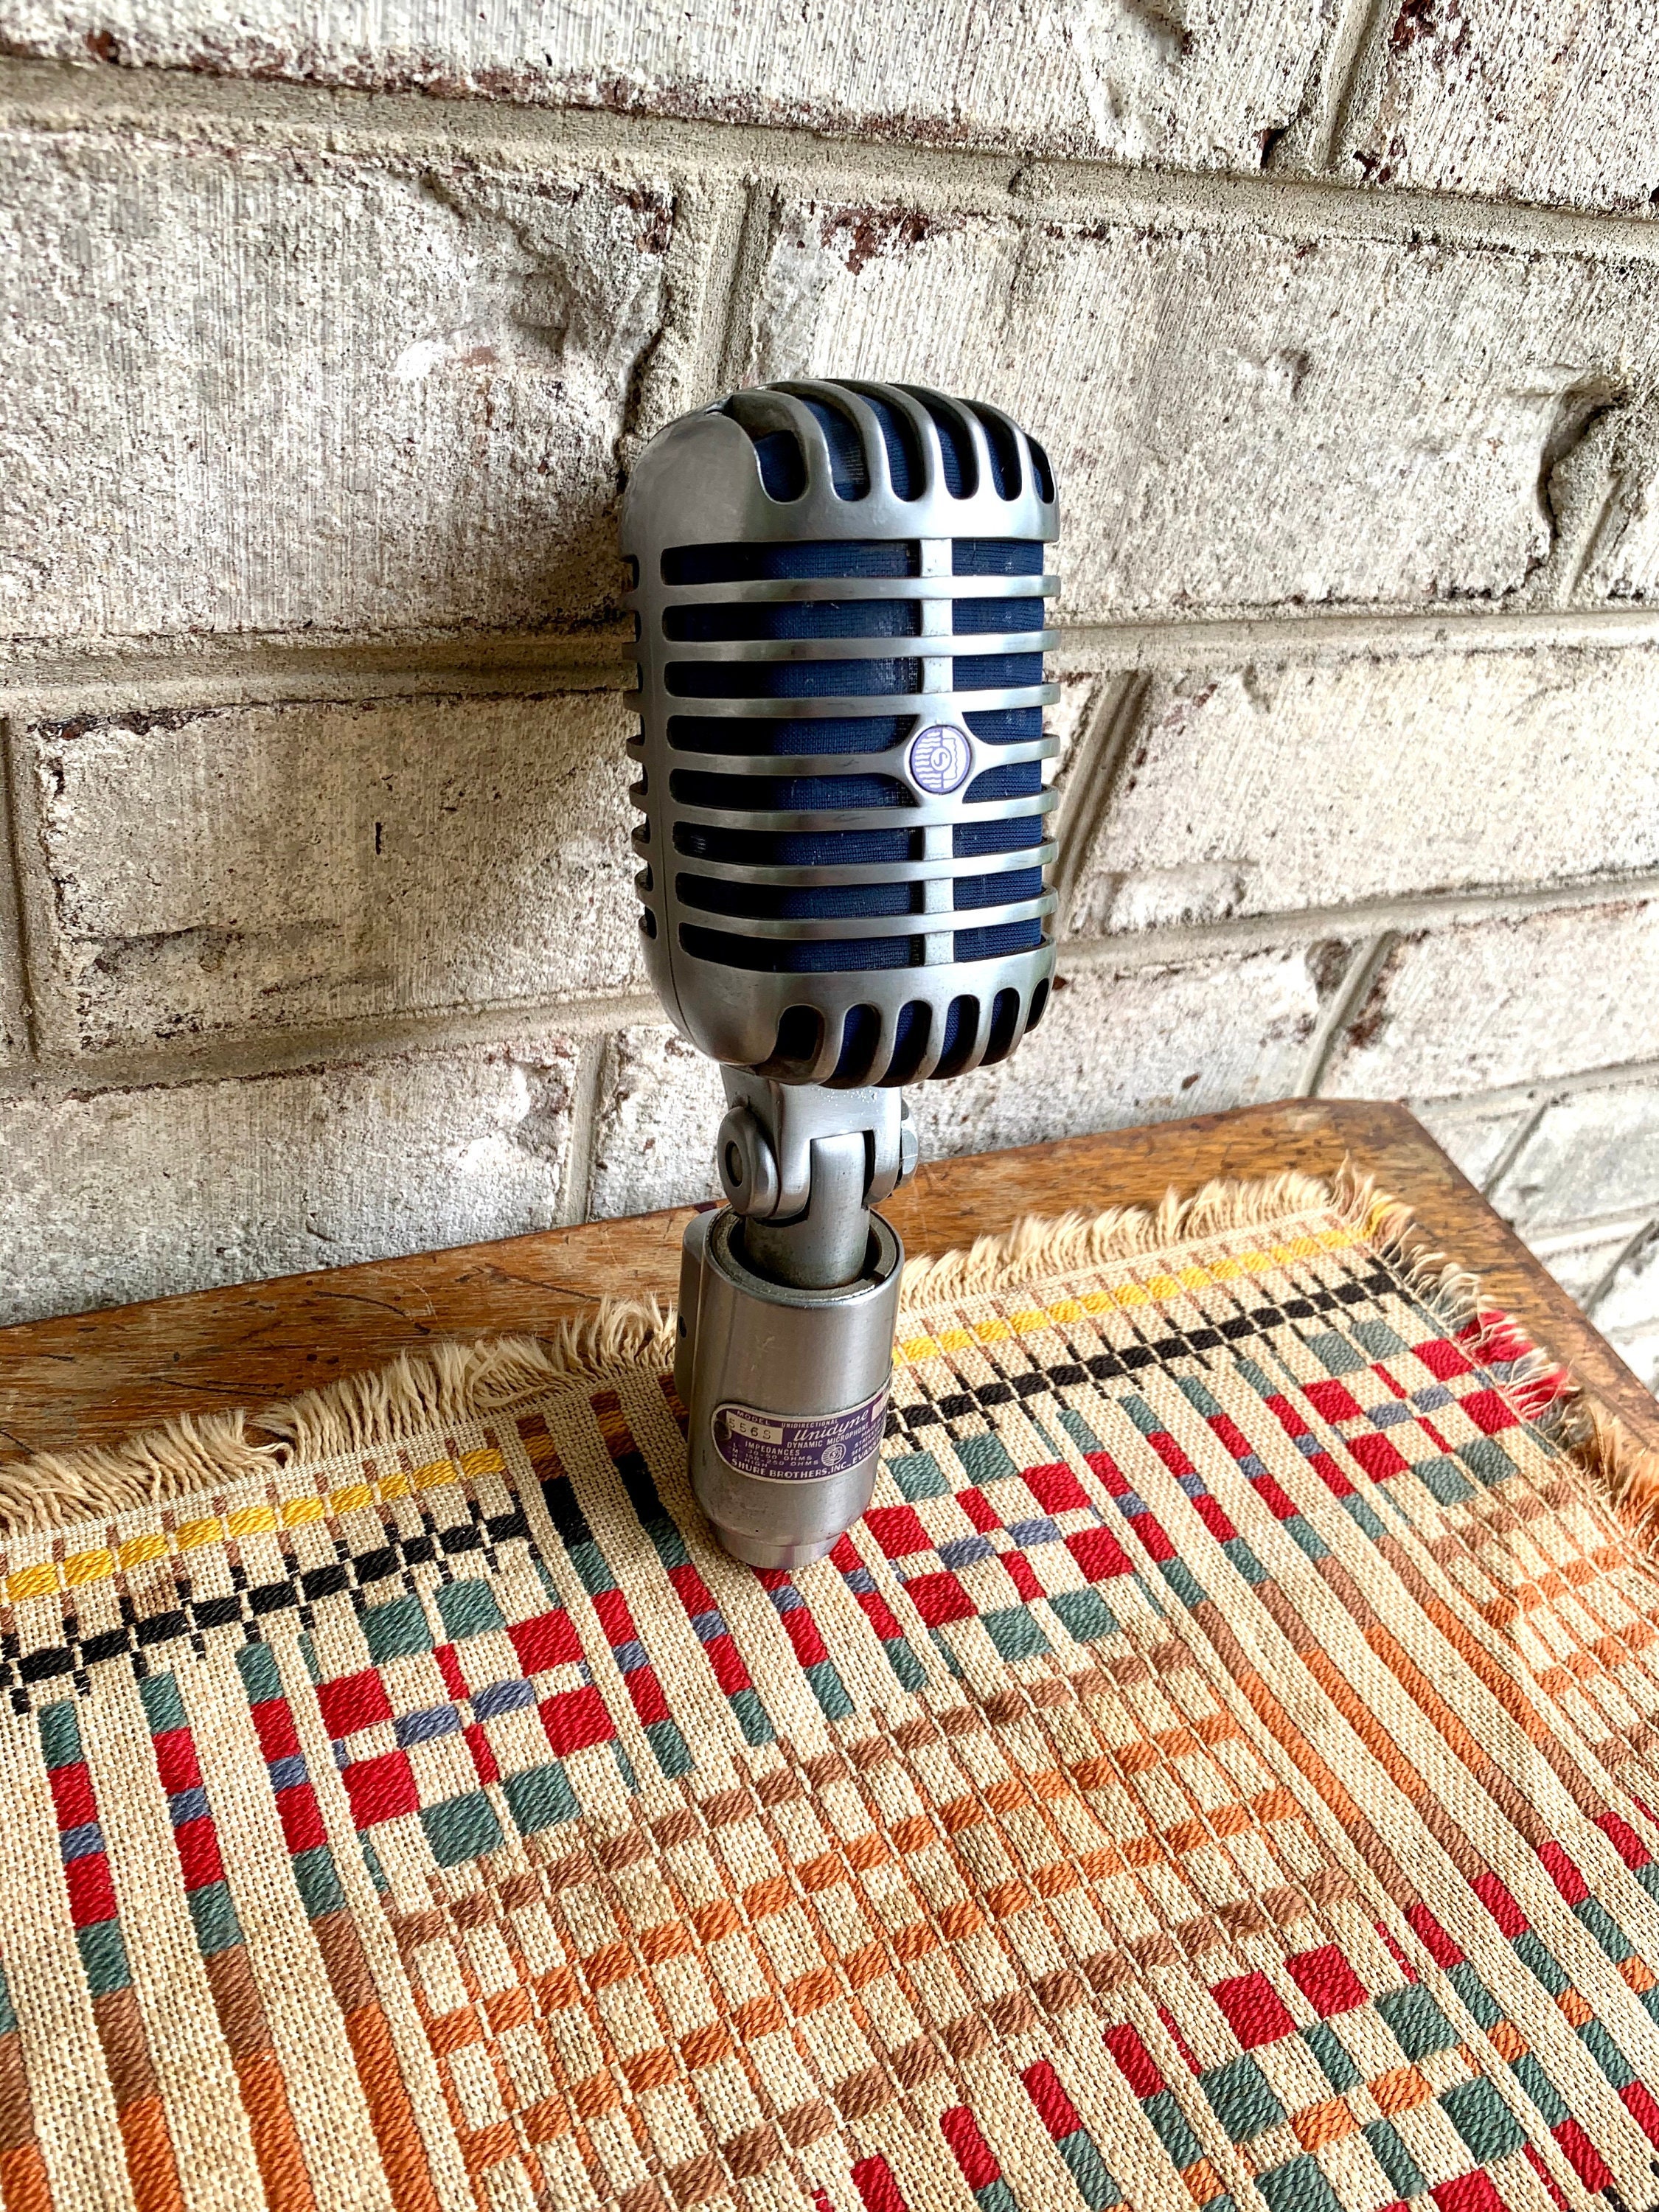 Sonew Microphone vintage Microphone Vocal Dynamique Vintage Classique,  Micro à Condensateur de Style Ancien video videoprojecteur